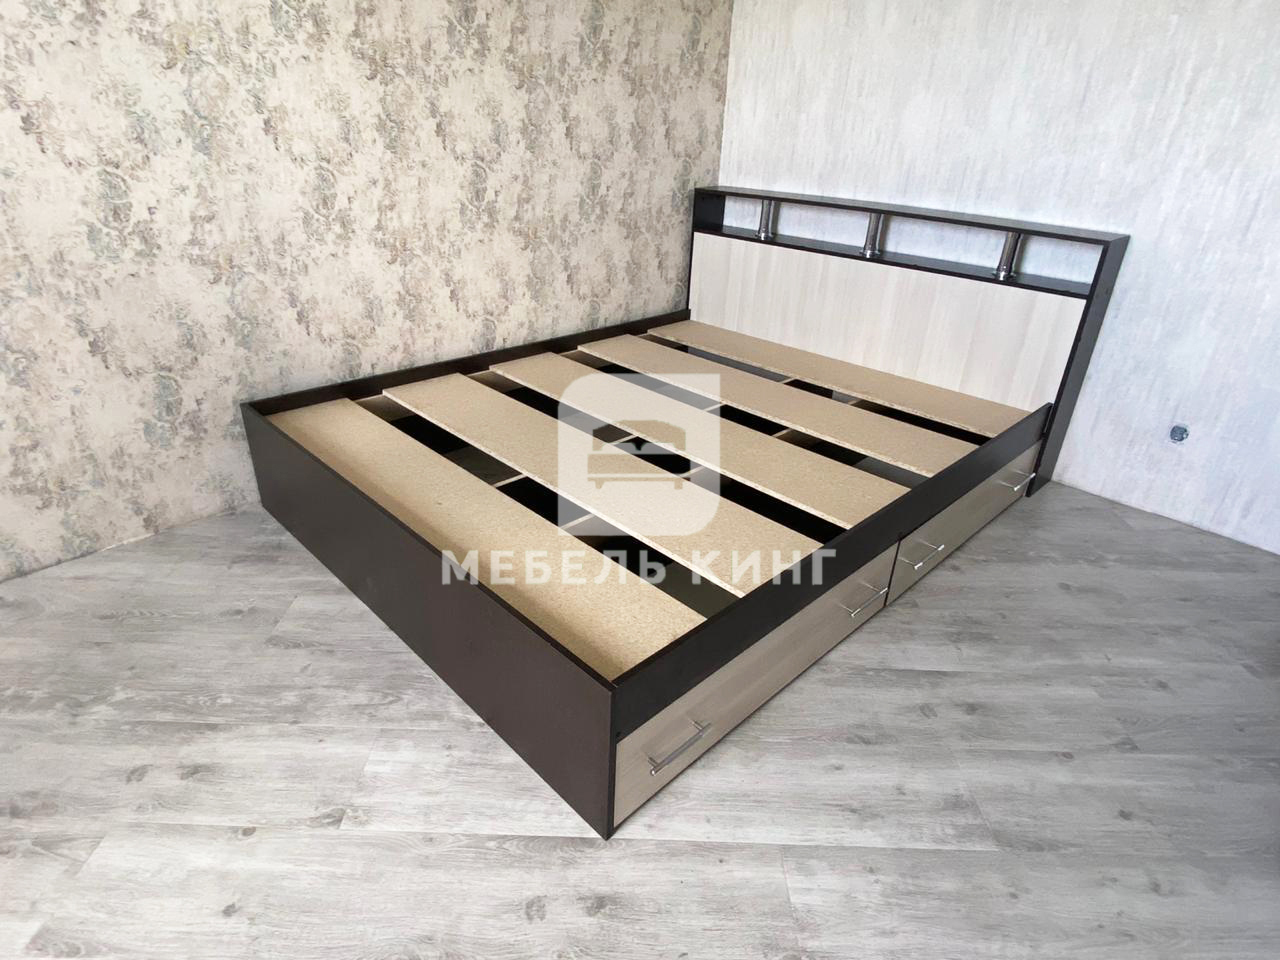 кровать сакура 140 200